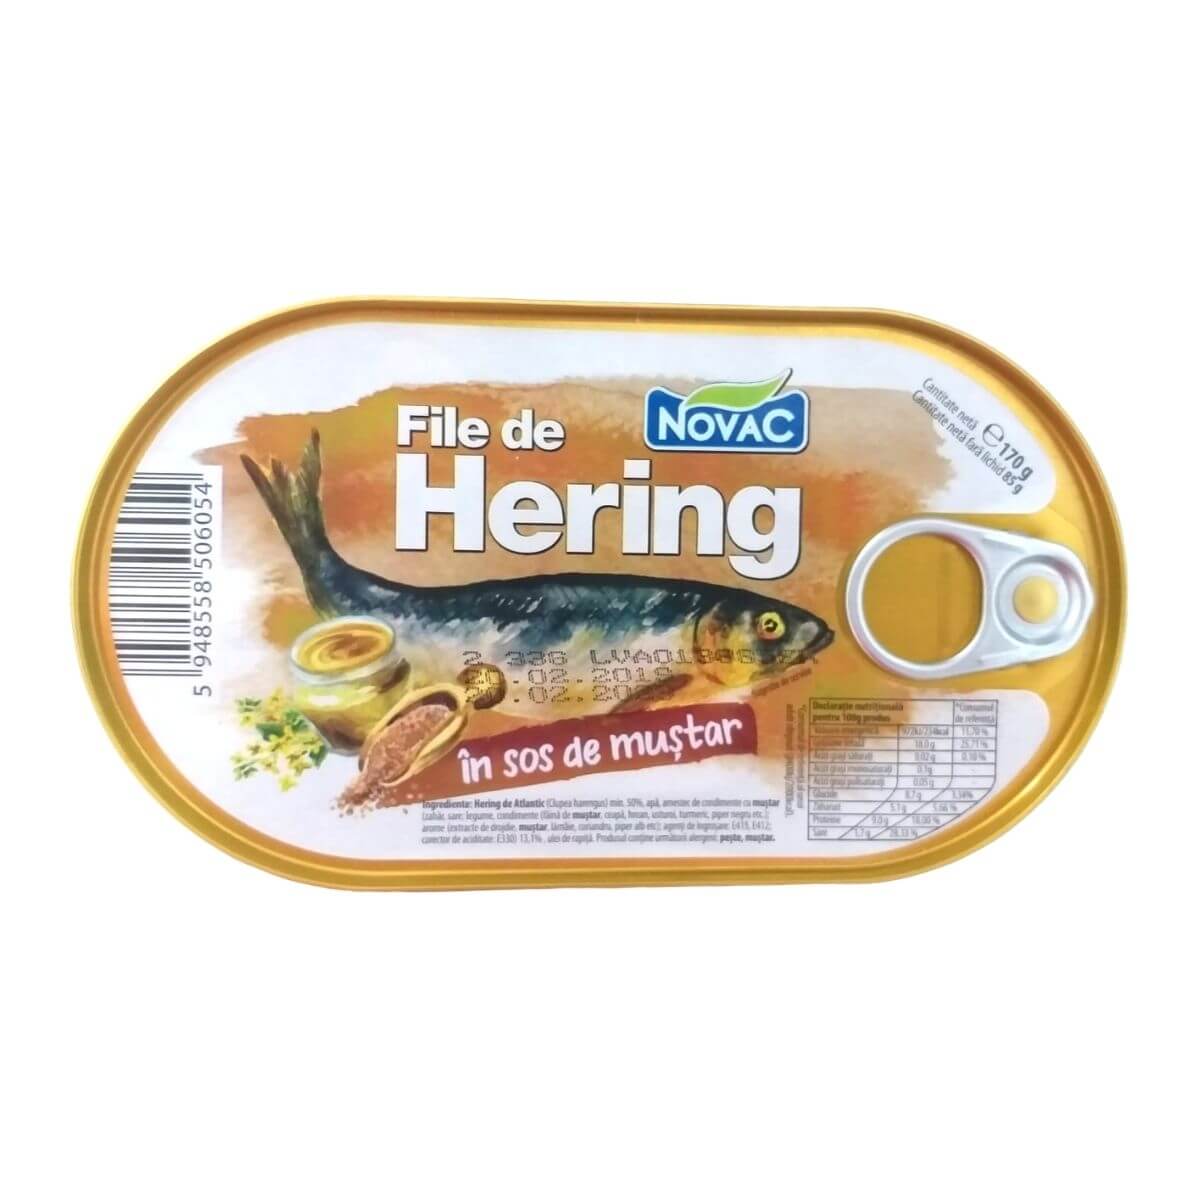 Novac File de Hering in sos de mustar, 170 g